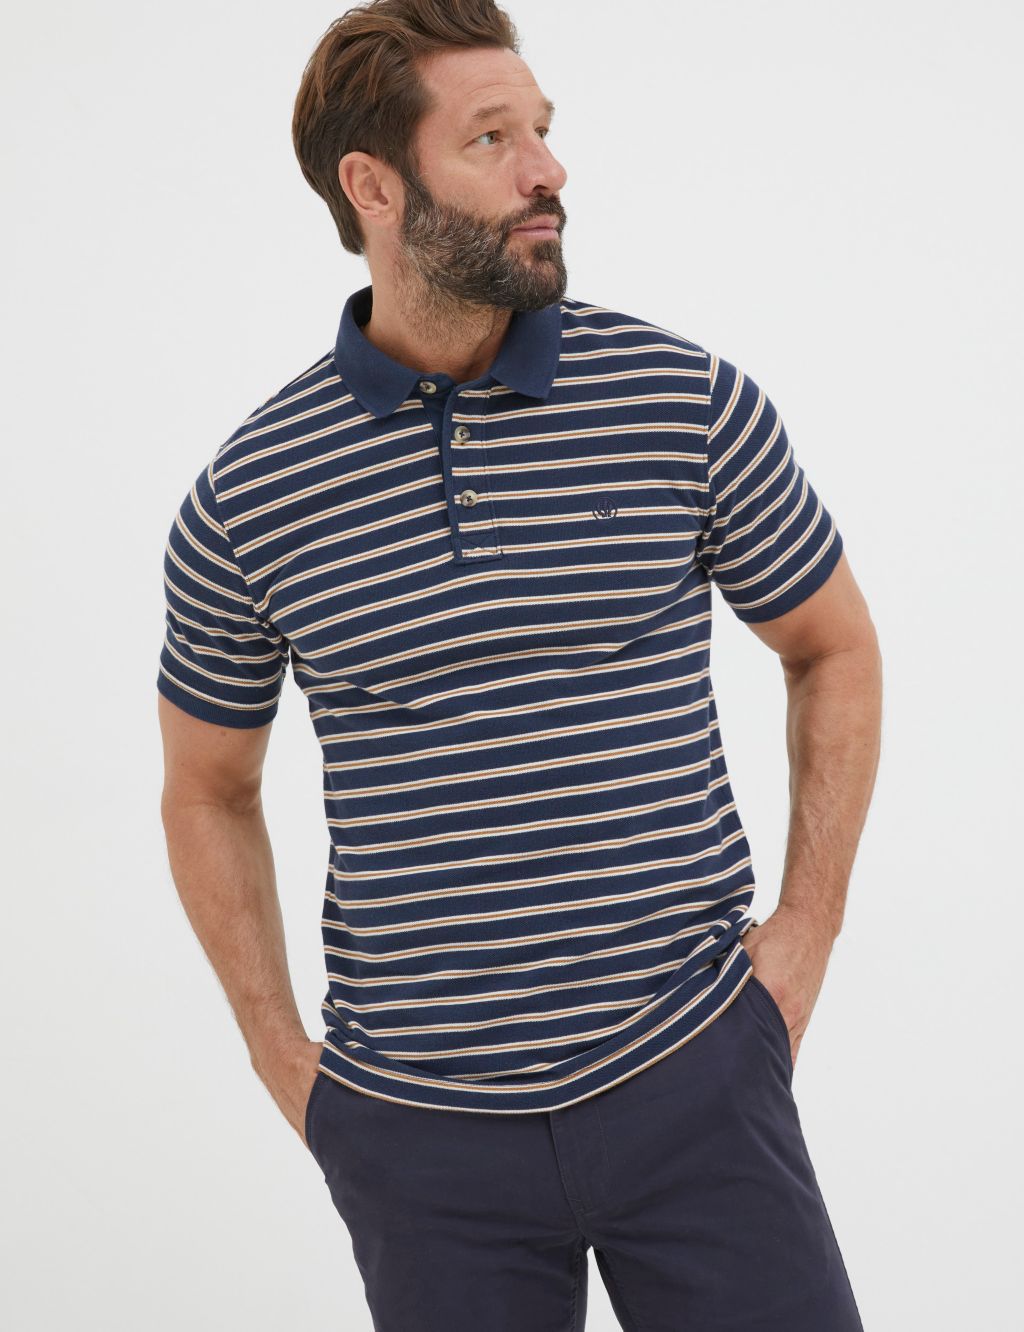 Organic Cotton Pique Striped Polo Shirt